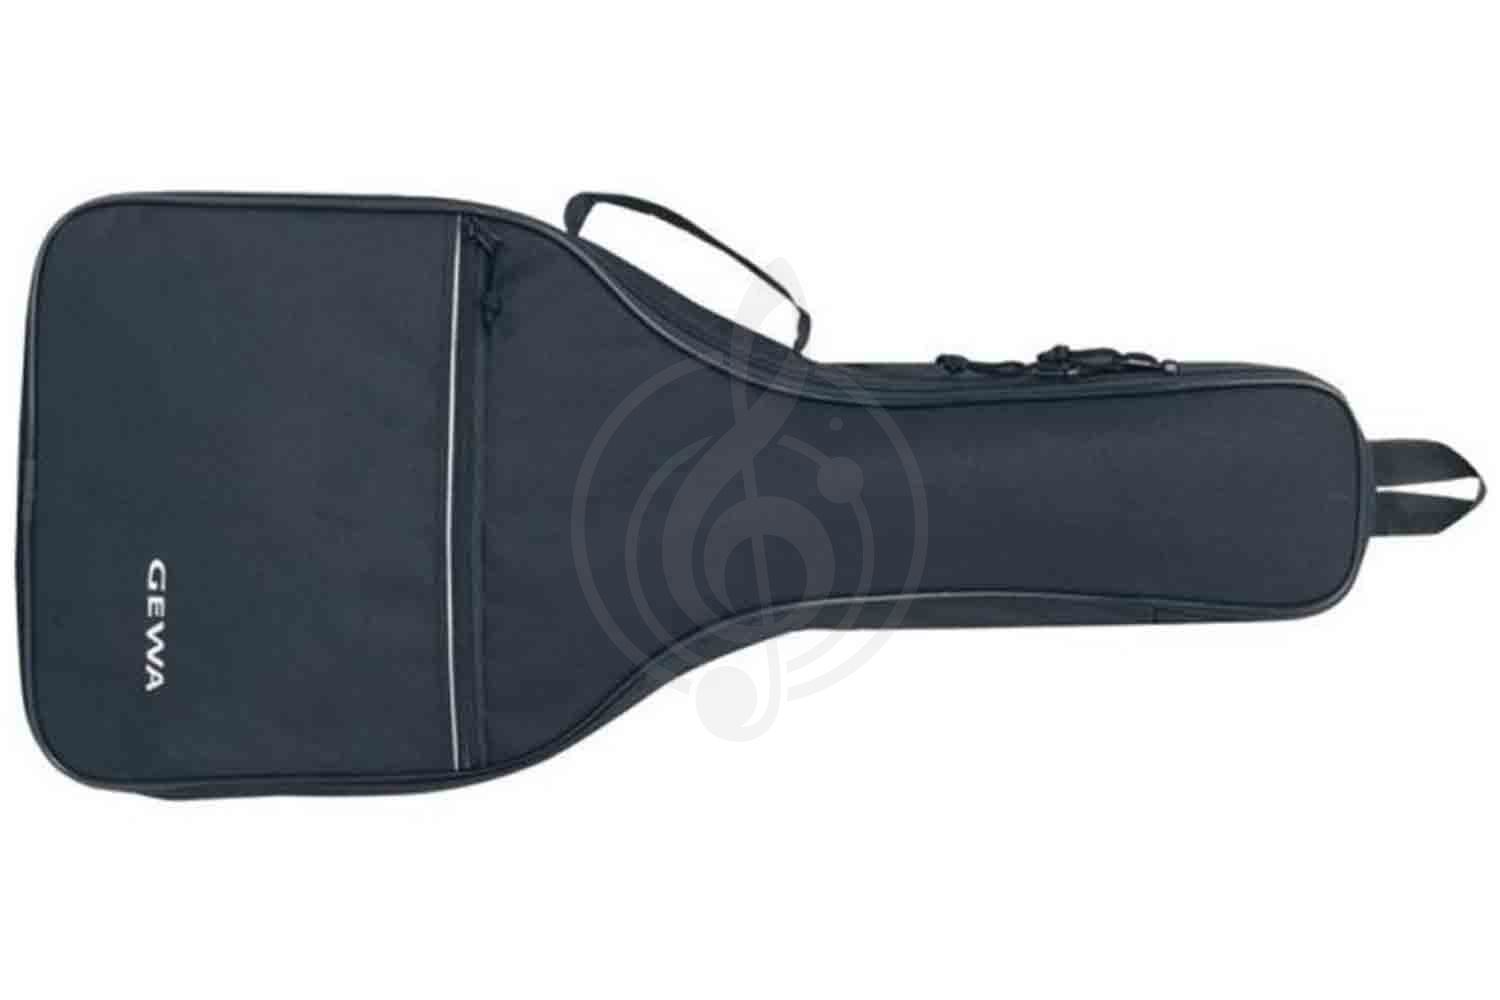  GEWA Classic Flat Mandolin Gig Bag - Чехол для плоской мандолины, GEWA Classic Flat Mandolin Gig Bag в магазине DominantaMusic - фото 1